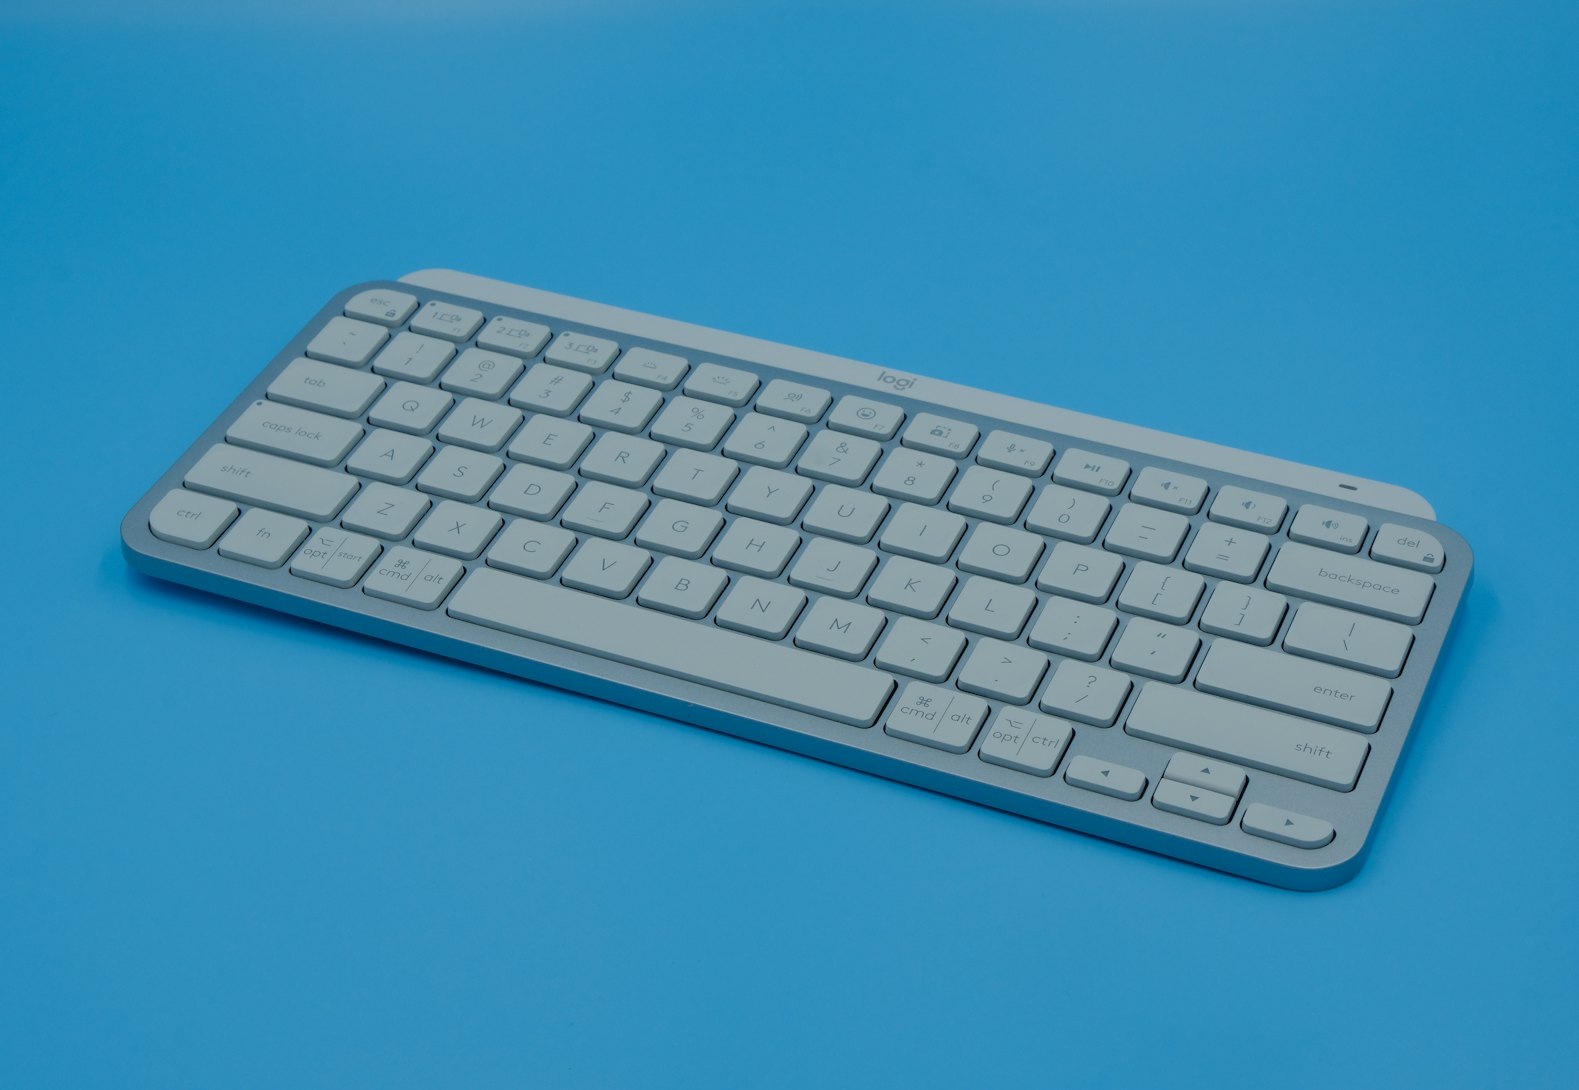 Logitech MX Keys Mini Wireless Keyboard Review